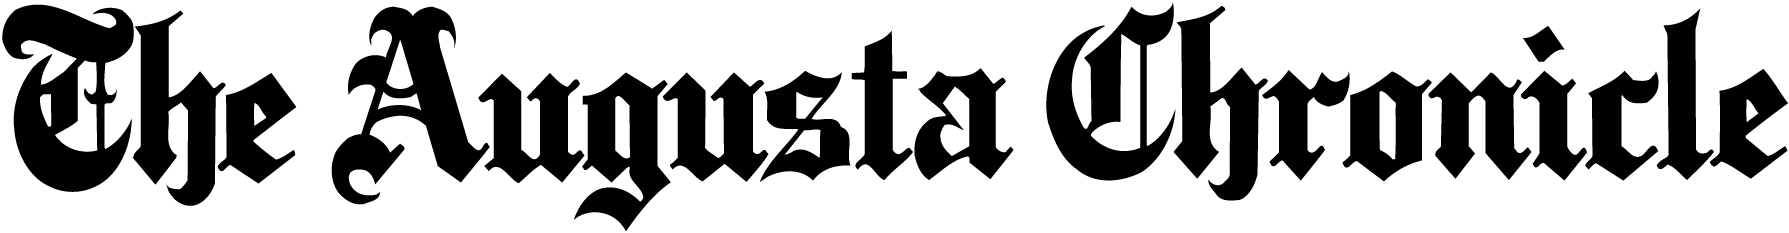 Augusta-chronicle-logo-georgia